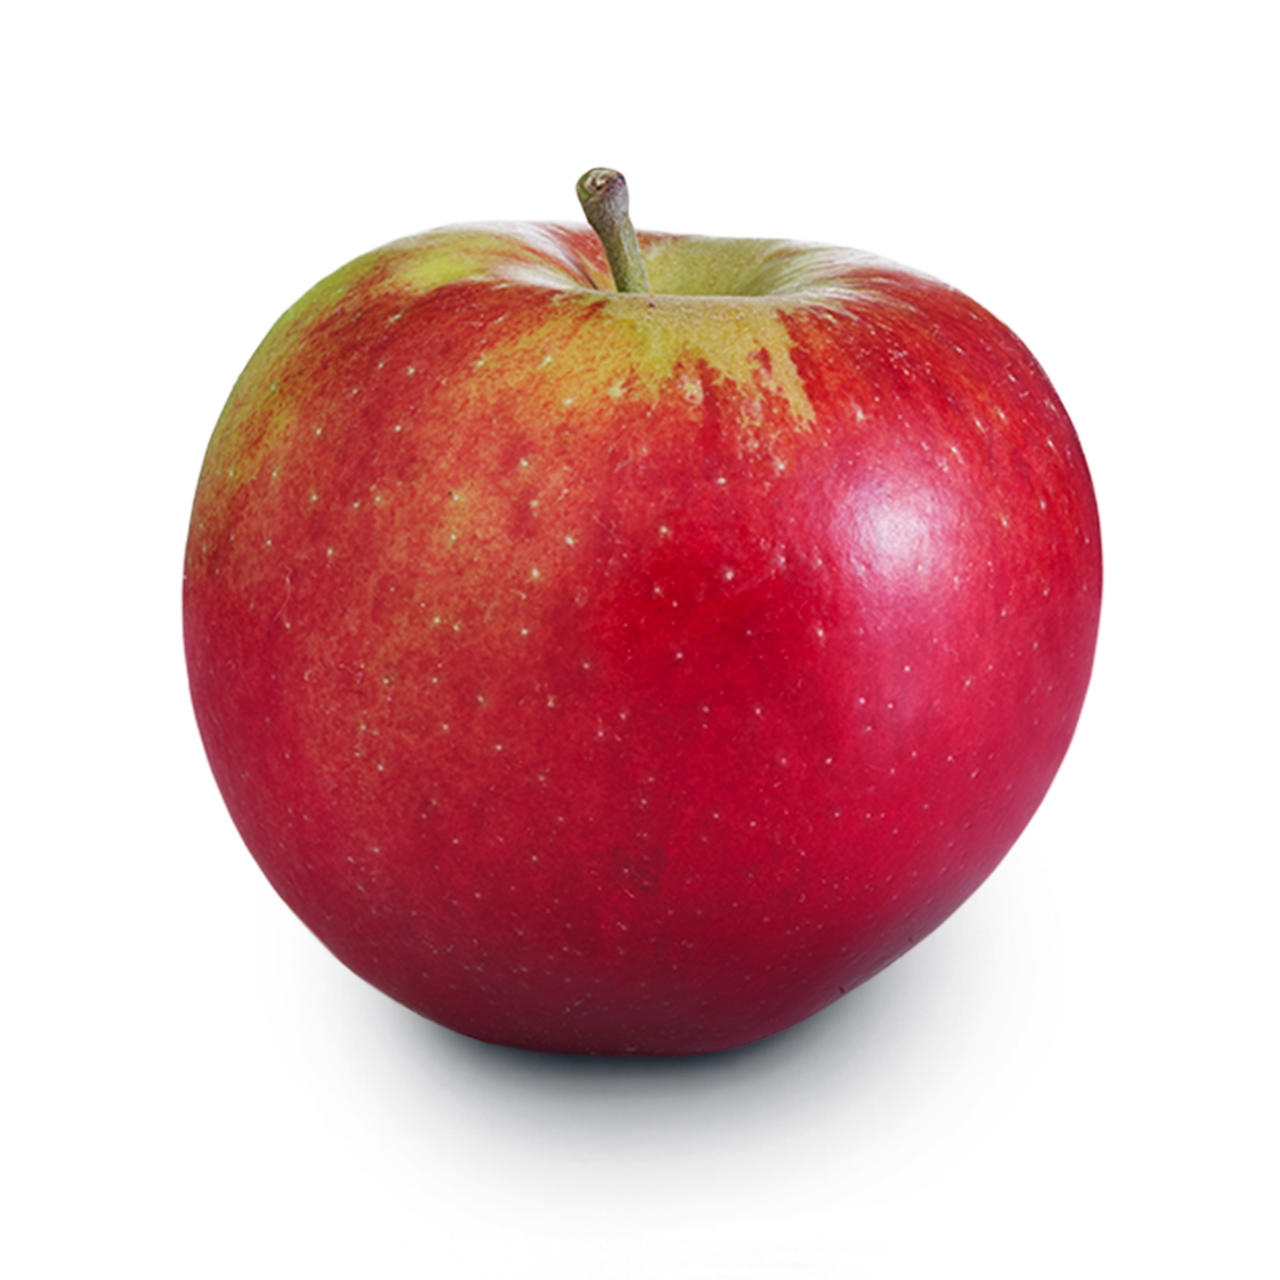 Æble af sorten junami på hvid baggrund